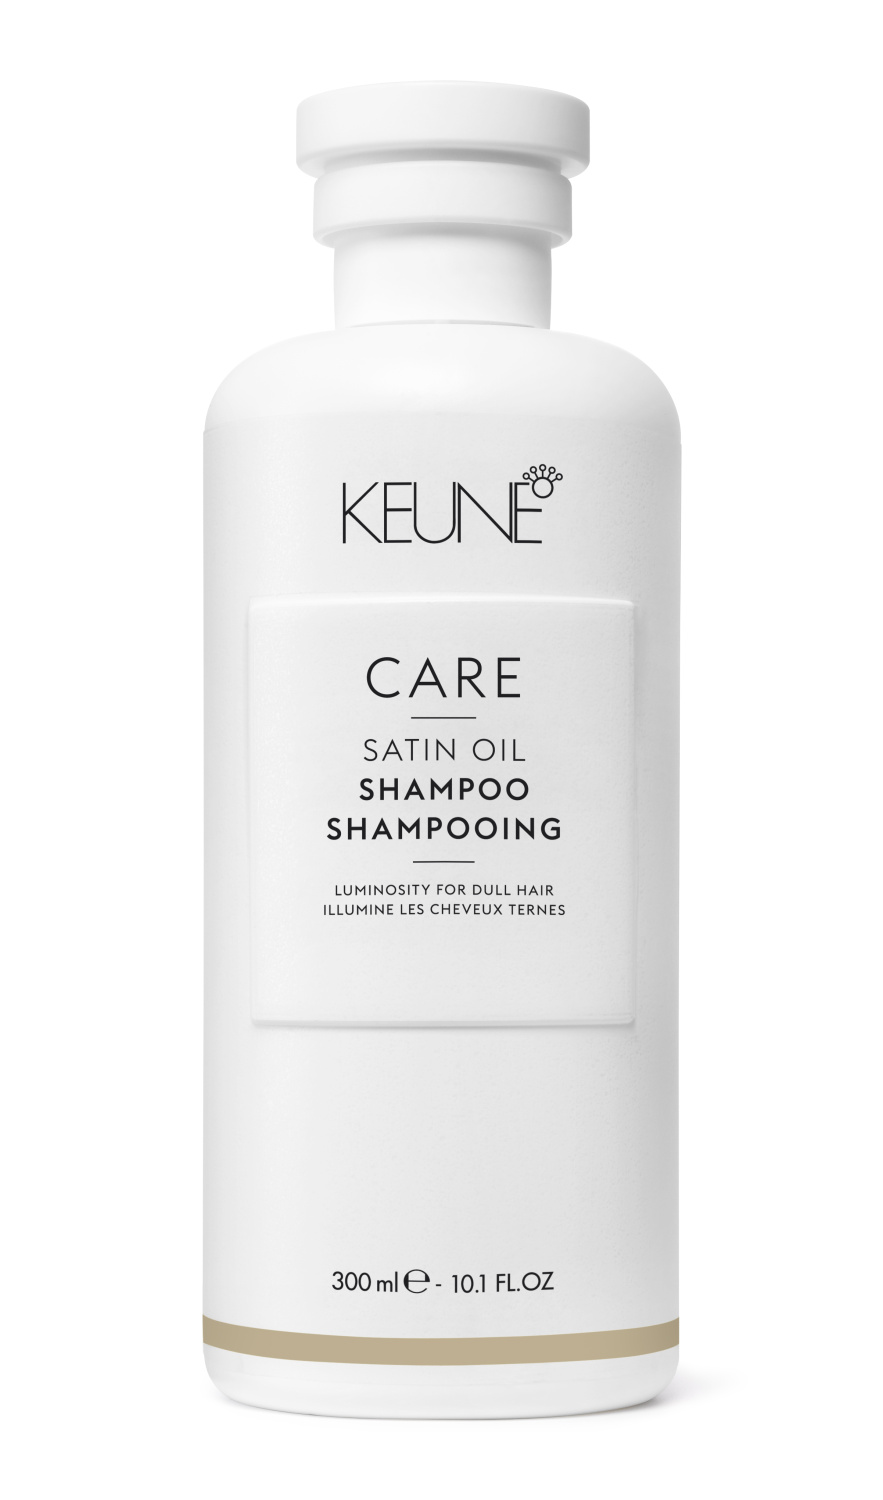 KEUNE Care Satin Oil Shampoo 300ml - интернет-магазин профессиональной косметики Spadream, изображение 49606